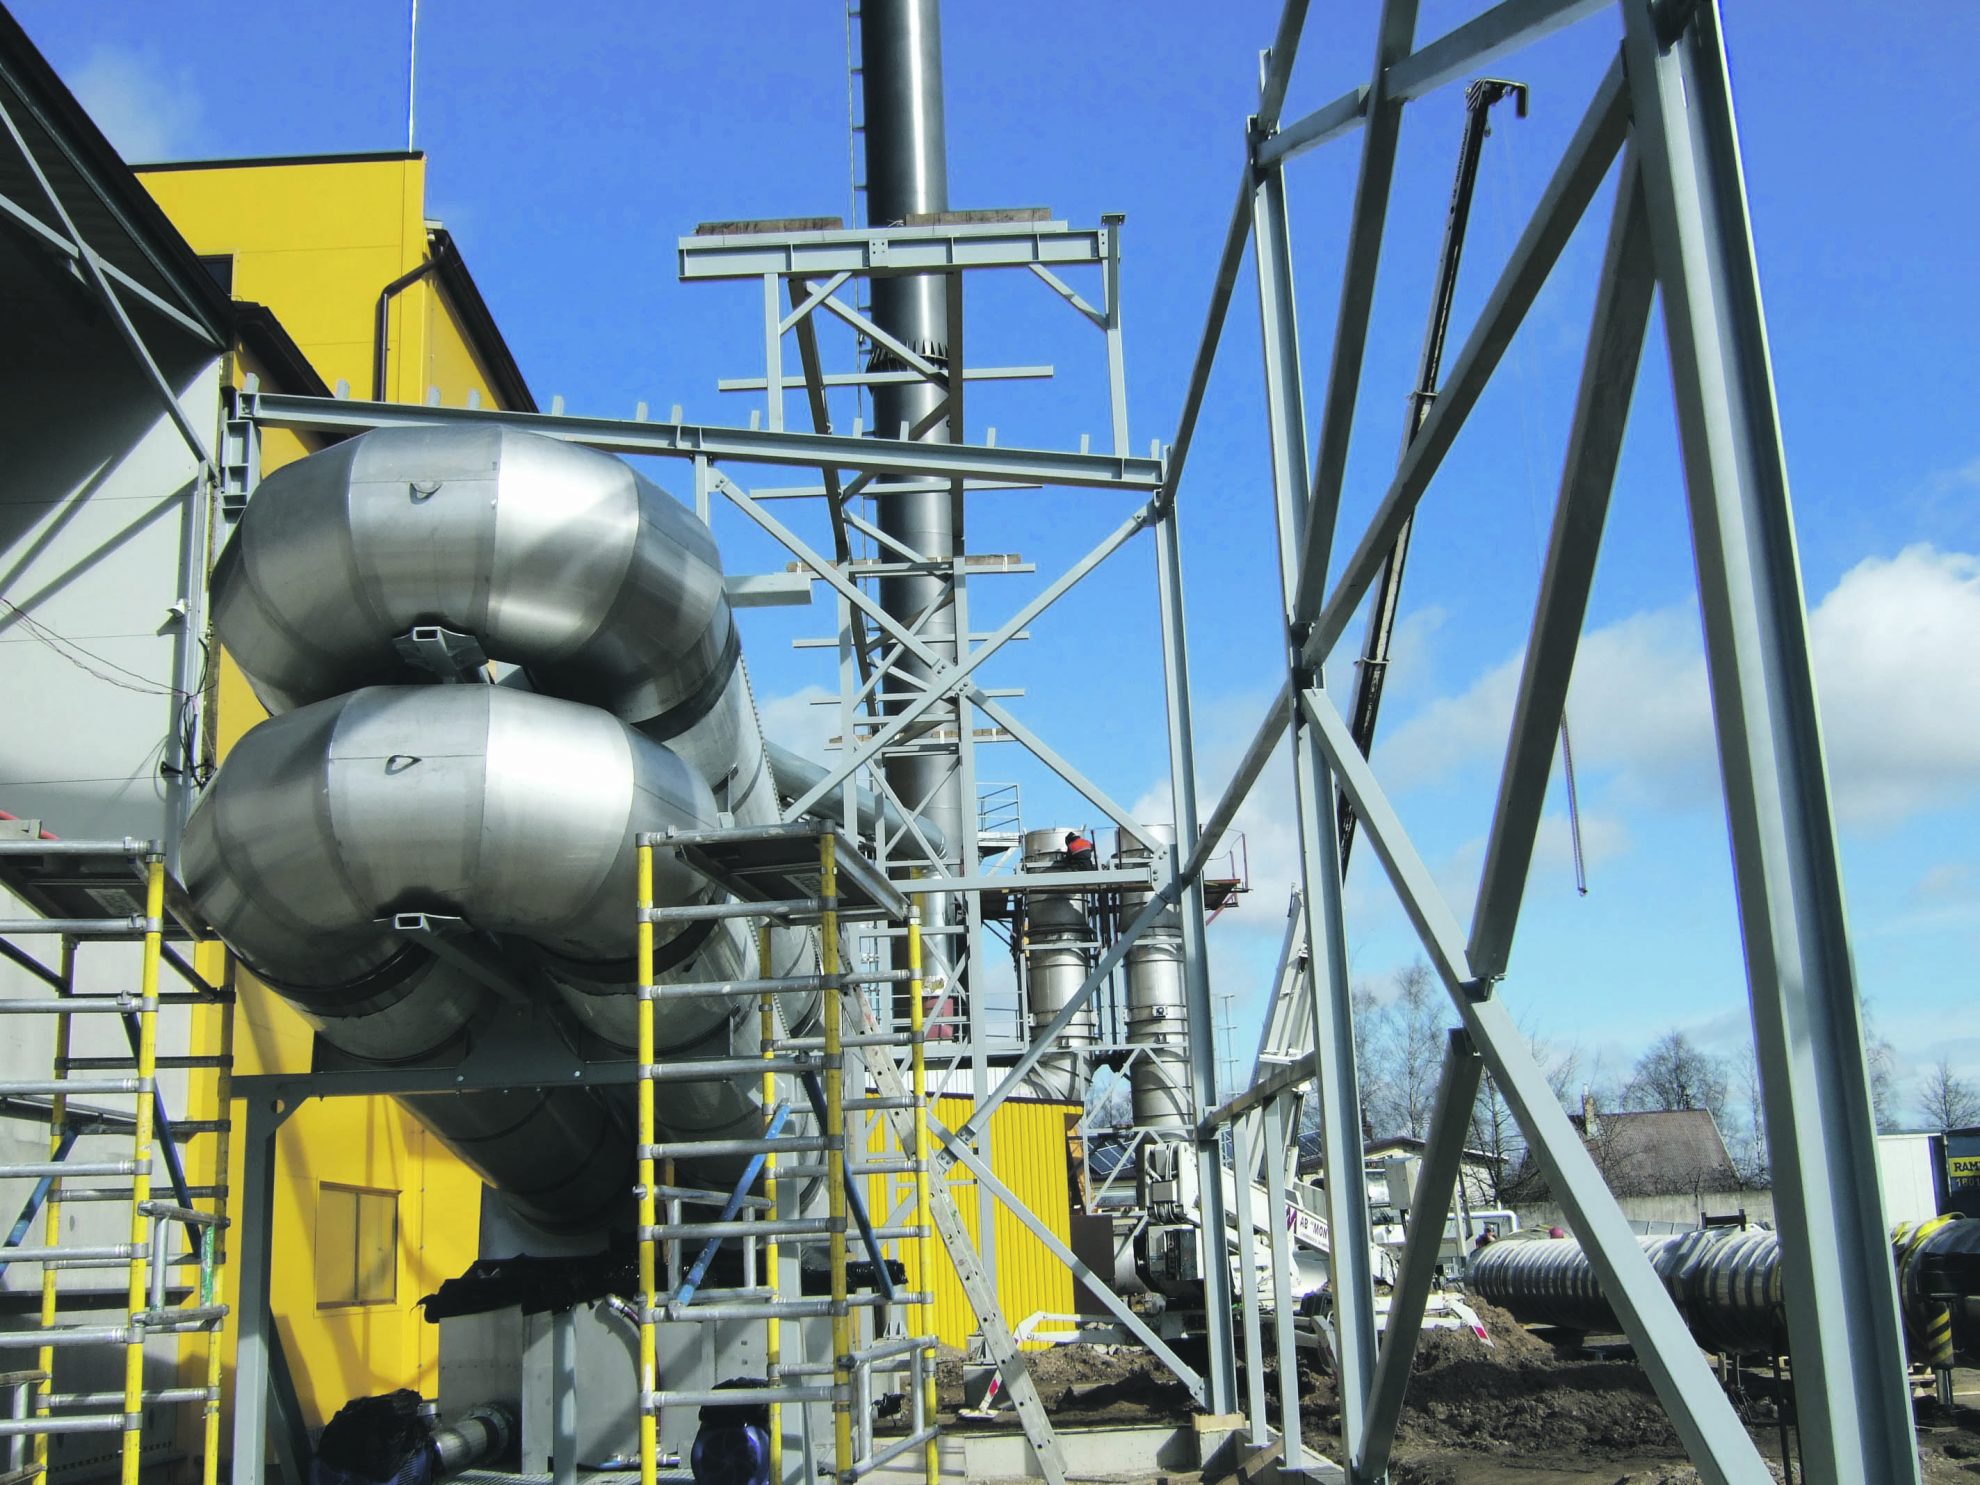 AB „Panevėžio energija“ baigė įgyvendinti projektą „Kondensacinio ekonomaizerio įrengimas Panevėžio RK-1“ – prie esamo biokuru kūrenamo katilo įrengtas 3 MW šilumos galios degimo produktų kondensacinis ekonomaizeris.